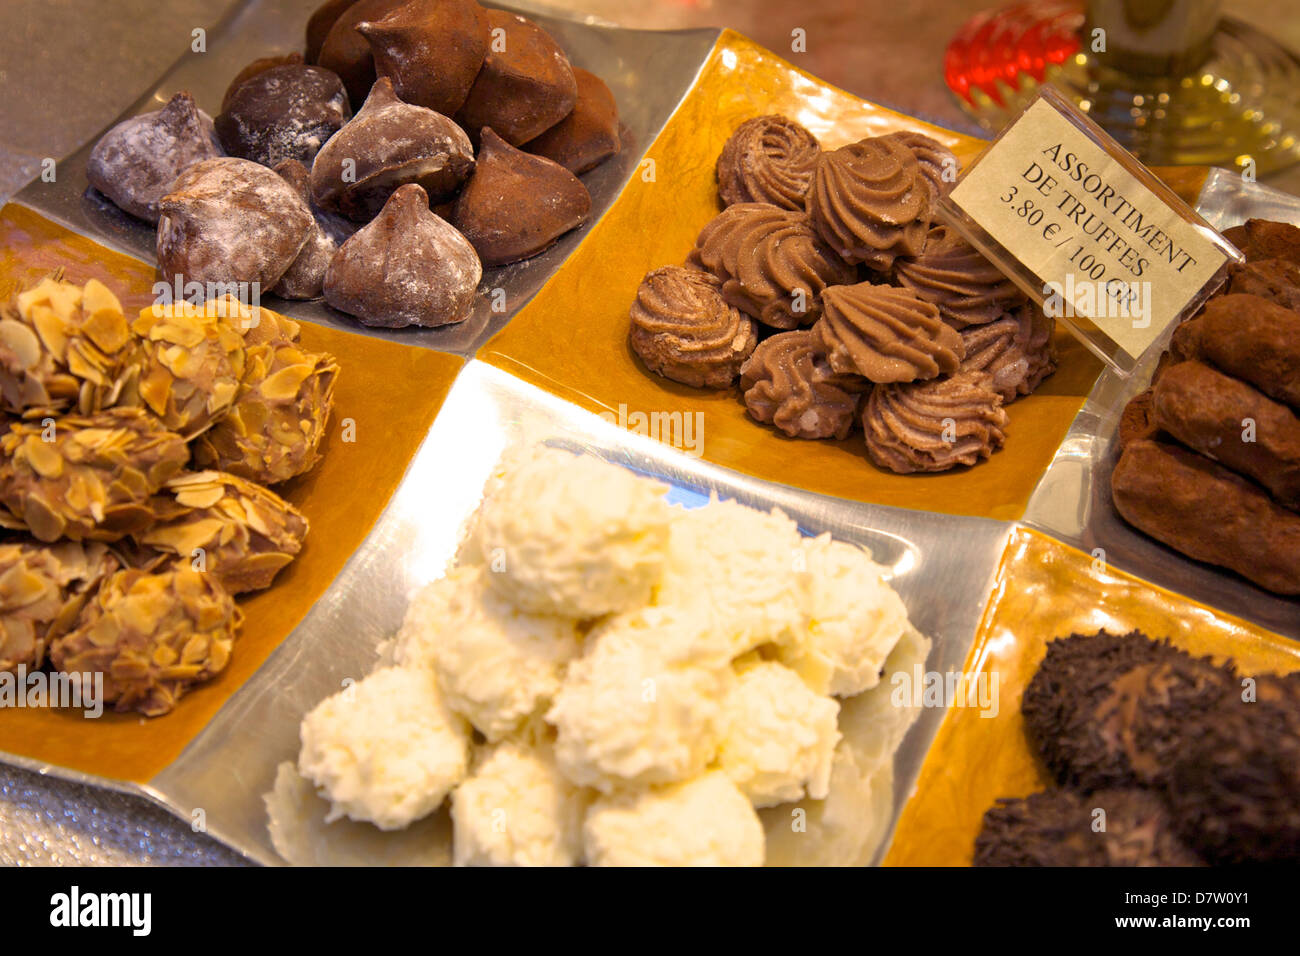 Truffes au chocolat dans une boutique, Bruxelles, Belgique Banque D'Images